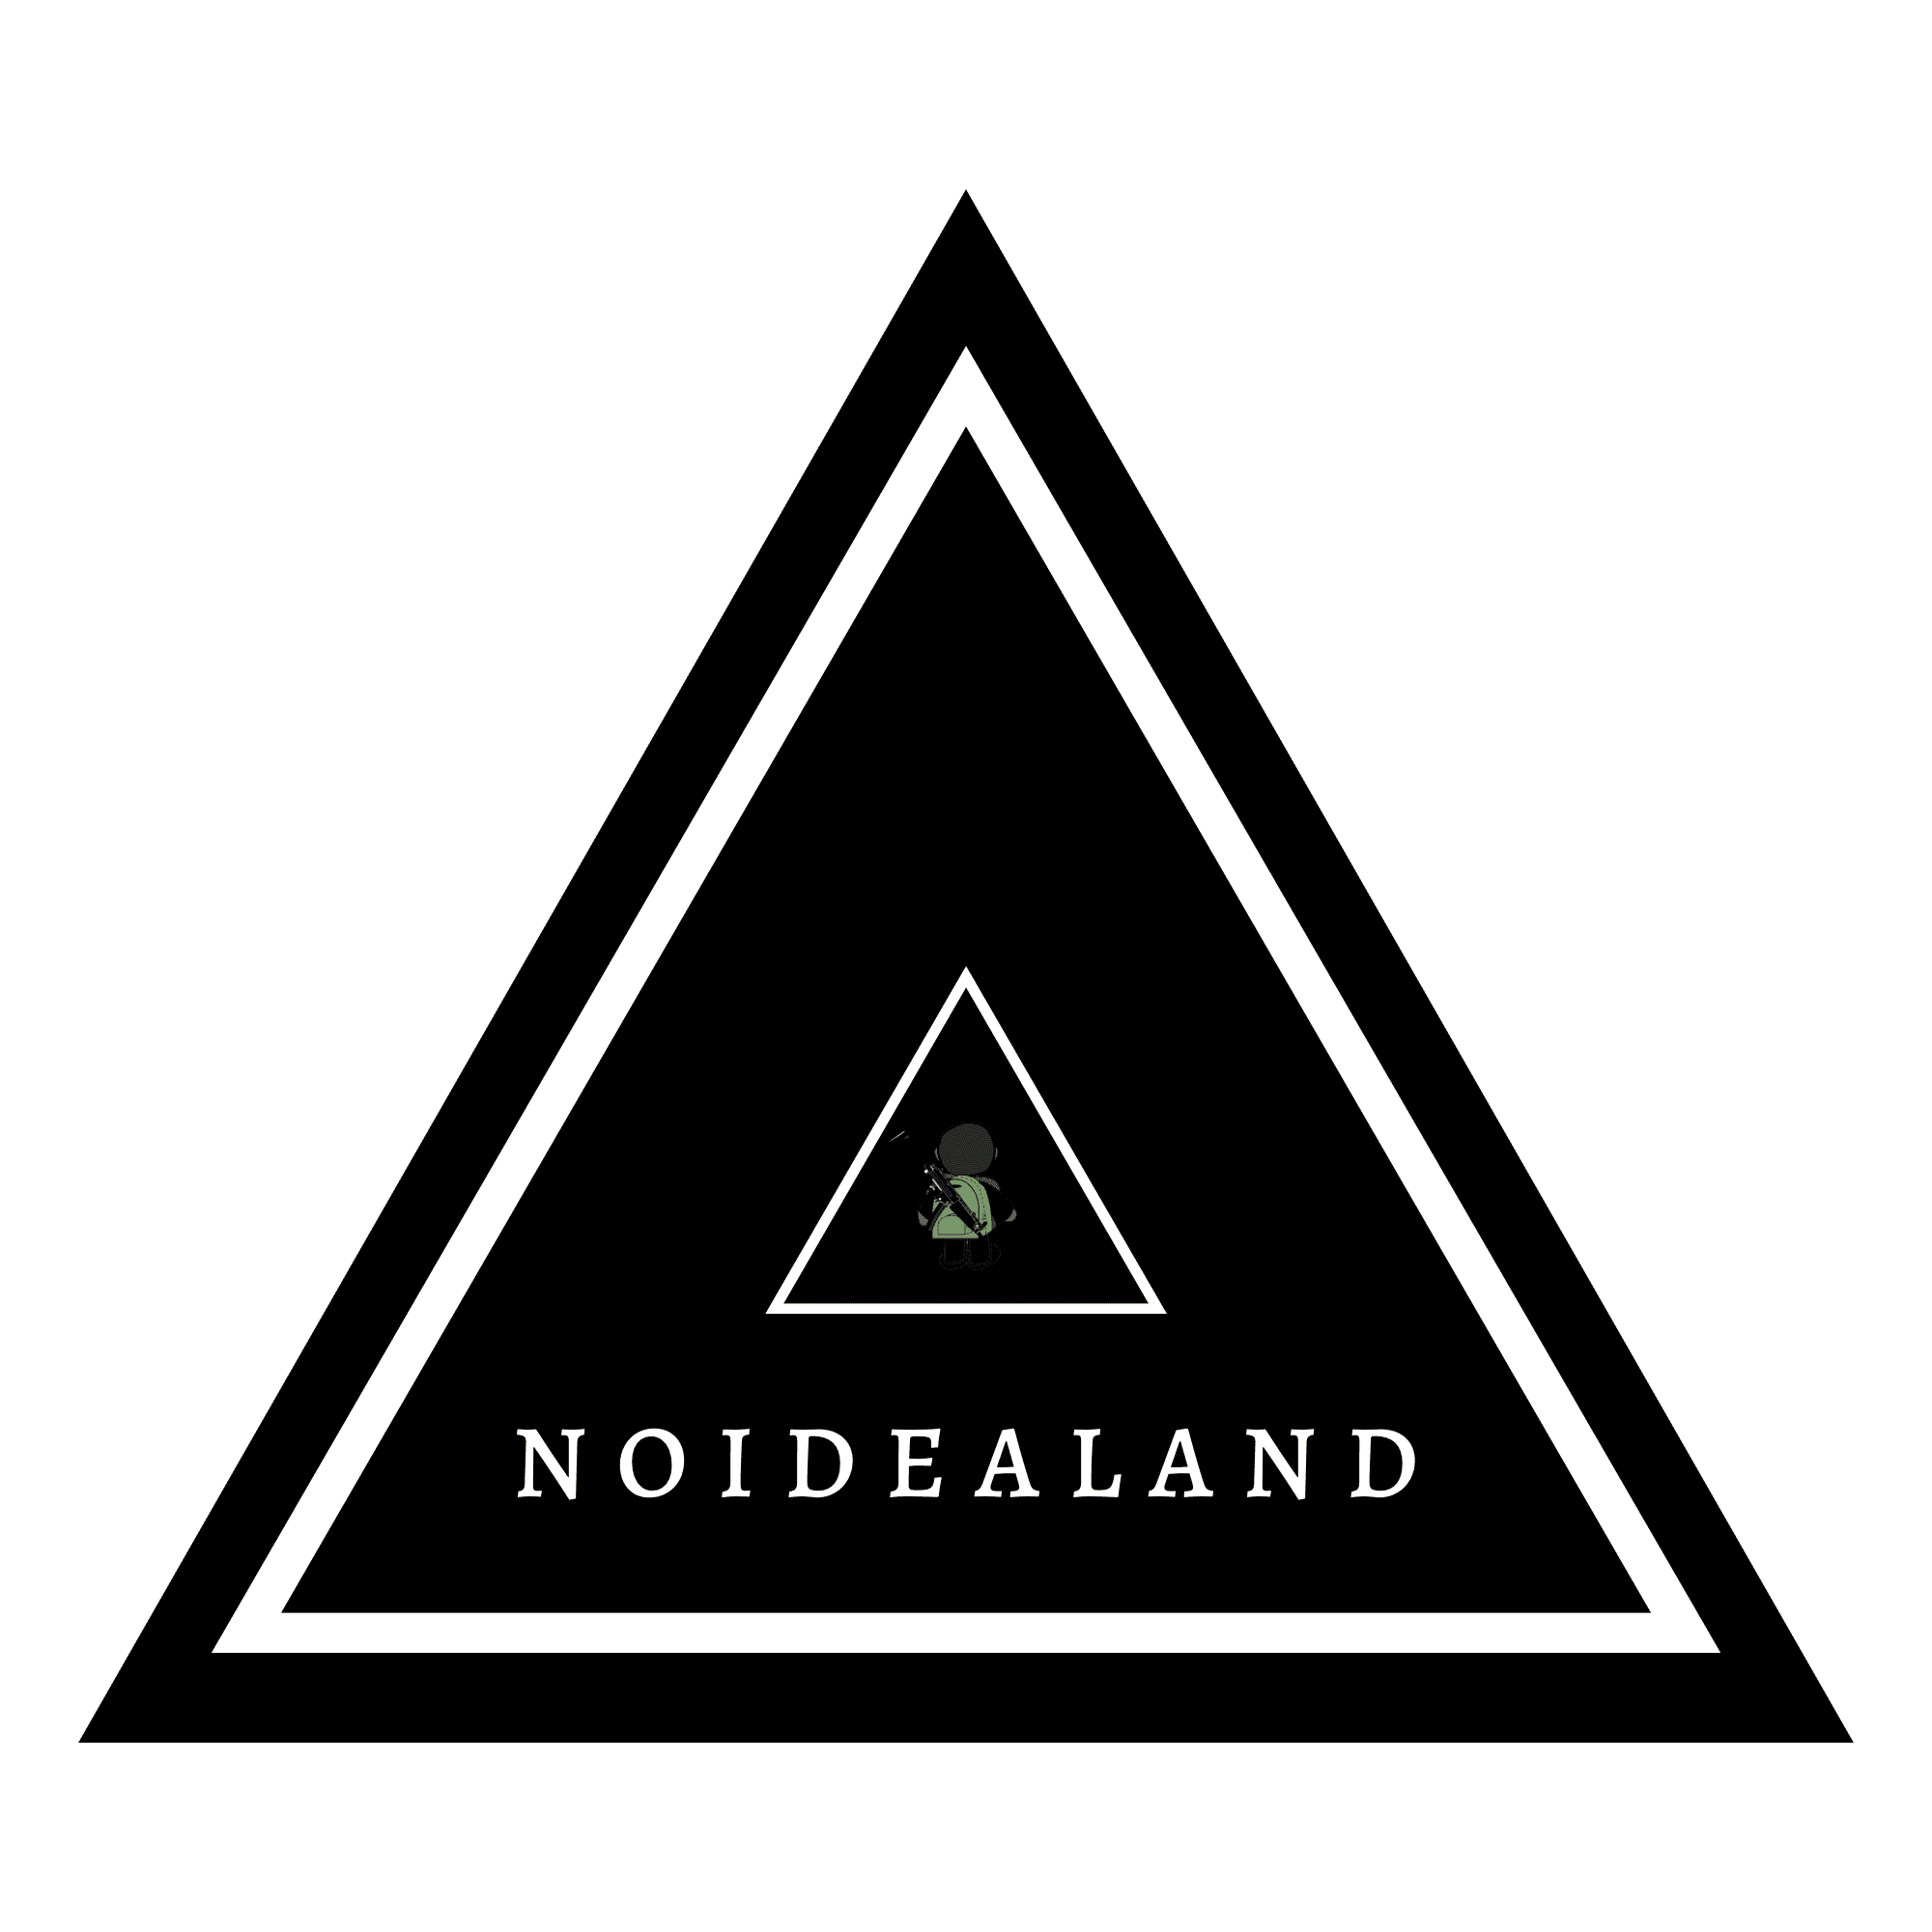 NOIDEALAND